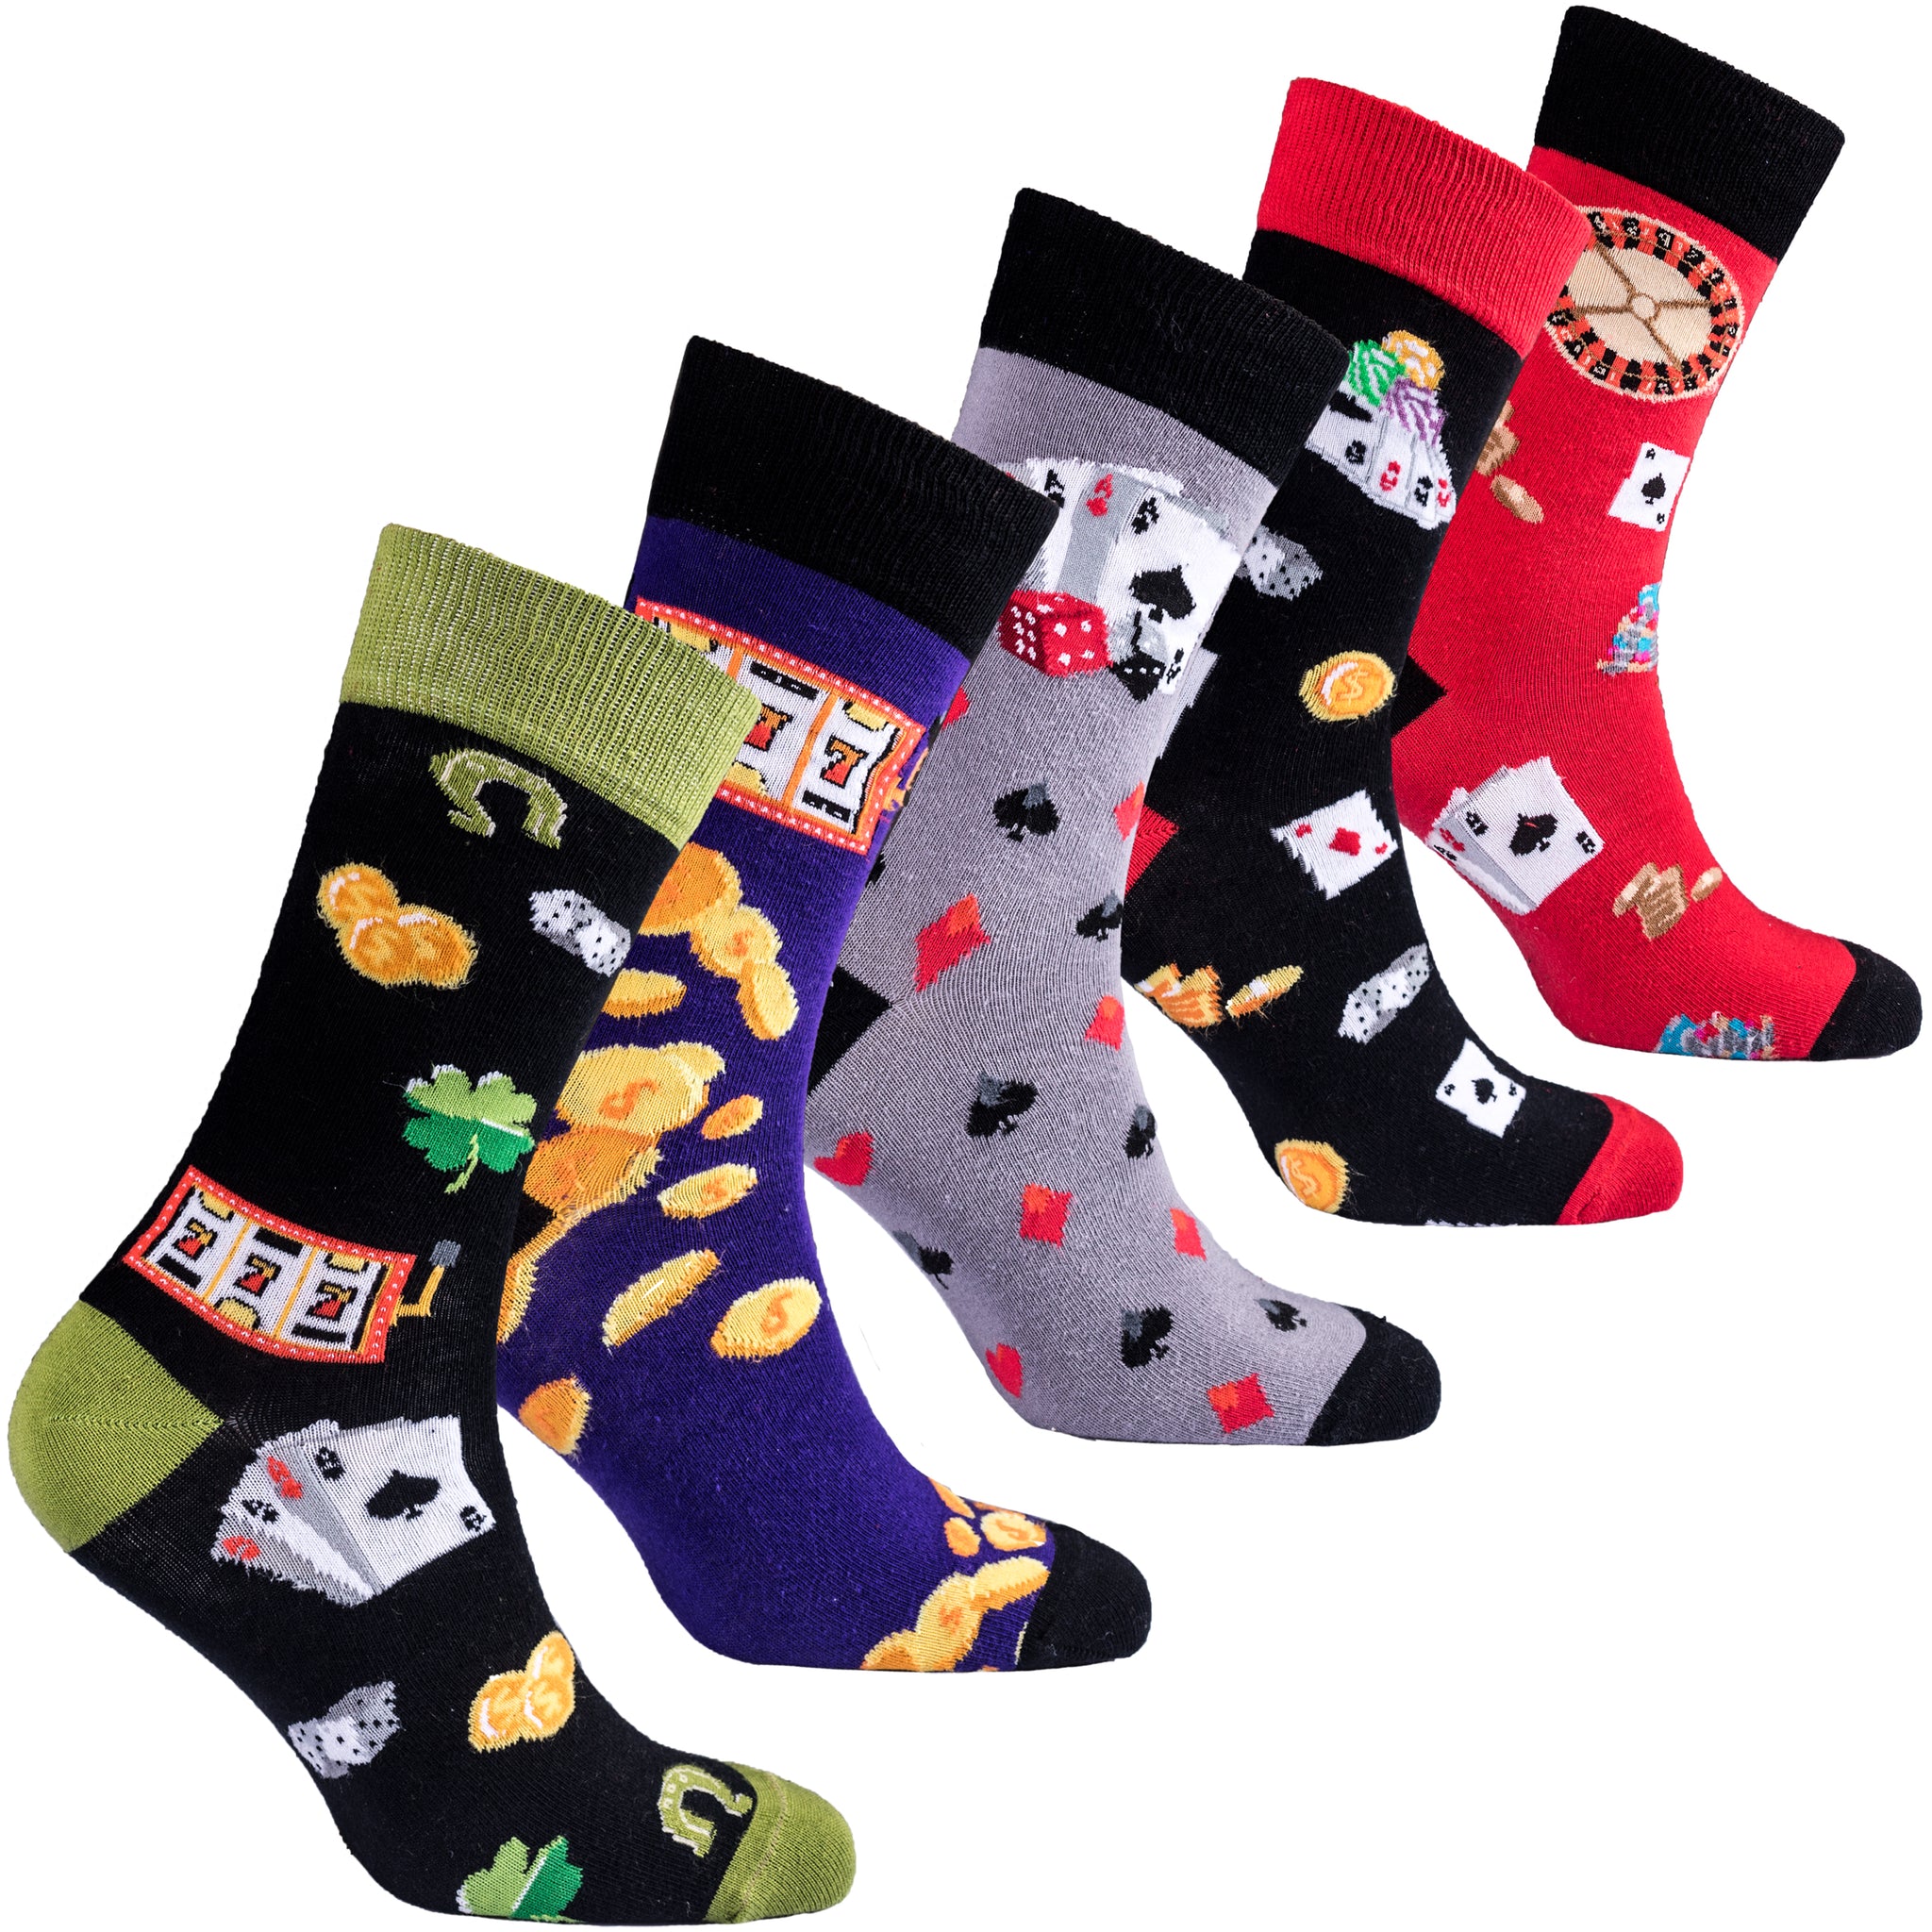 Men's Gambling Set Socks - Socks n Socks